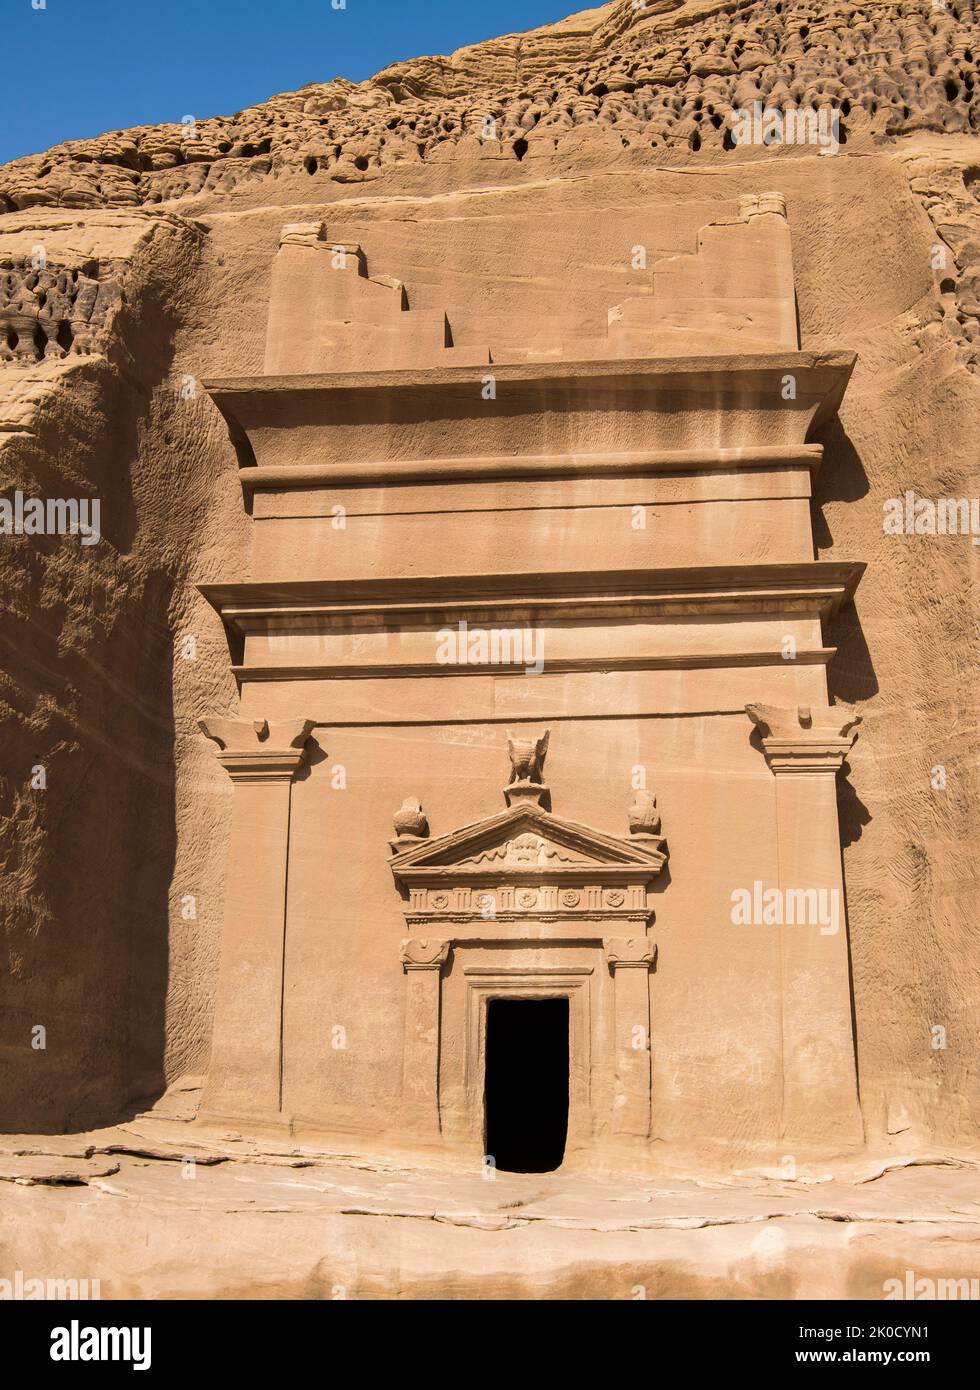 Facade skilfully carved tomb Jabal At Banat Hegra Saudi Arabia Stock Photo